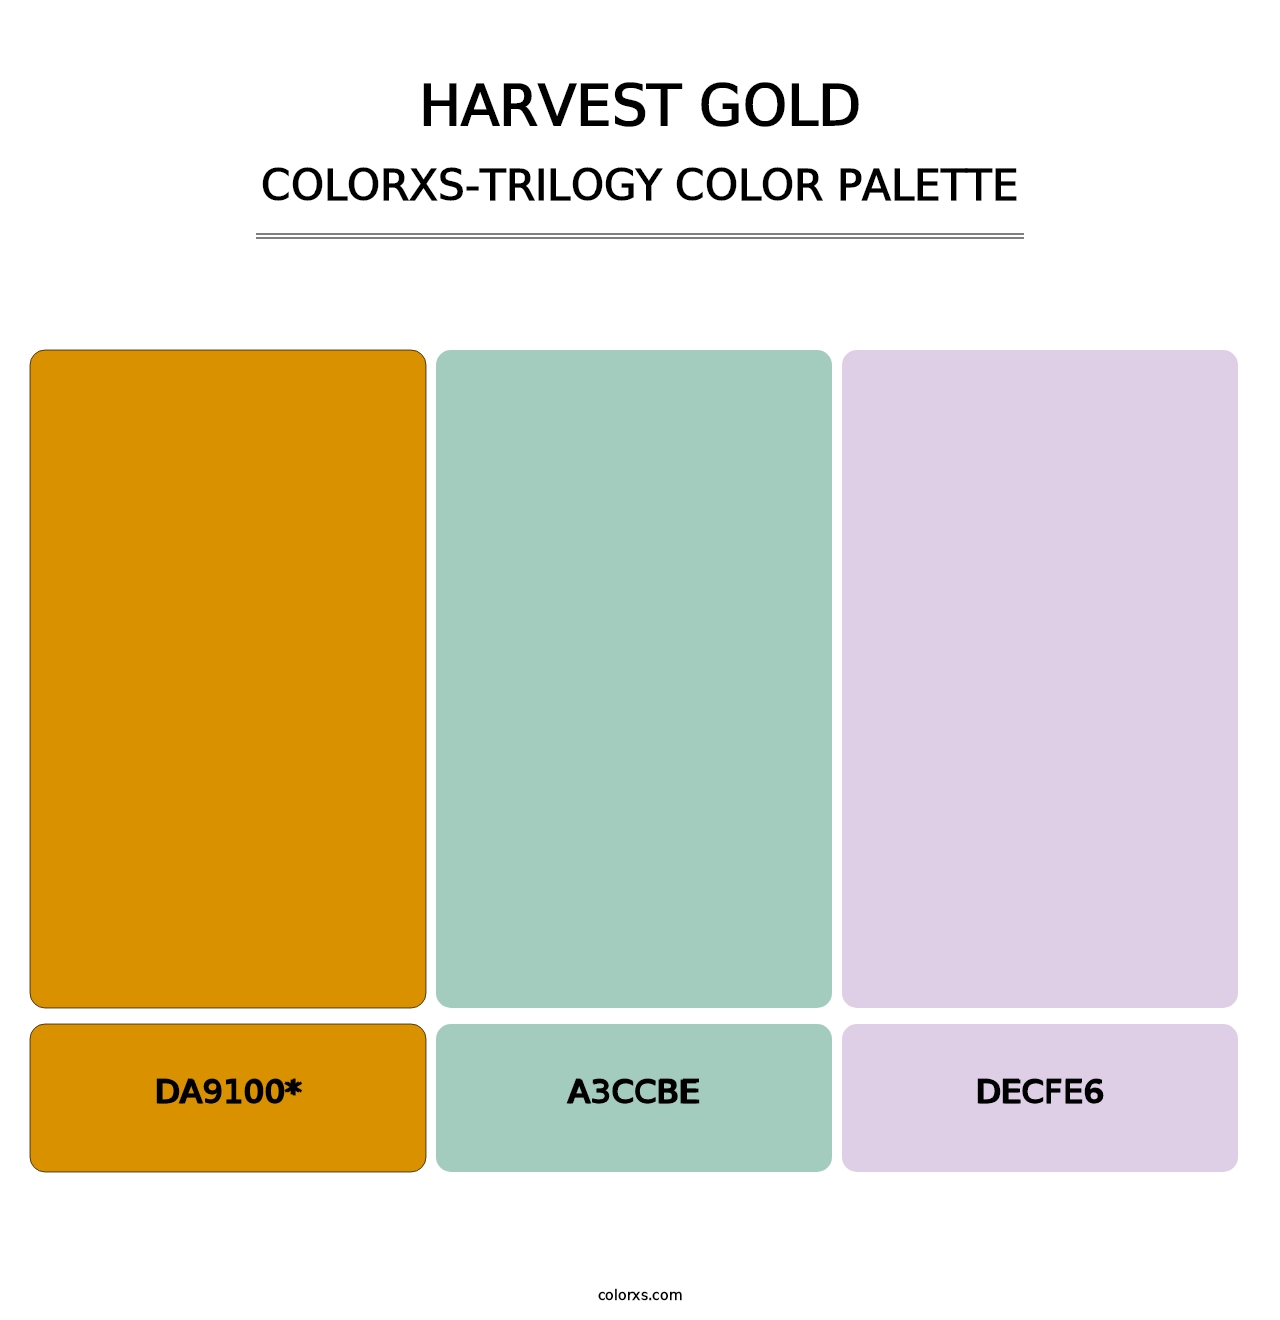 Harvest Gold - Colorxs Trilogy Palette